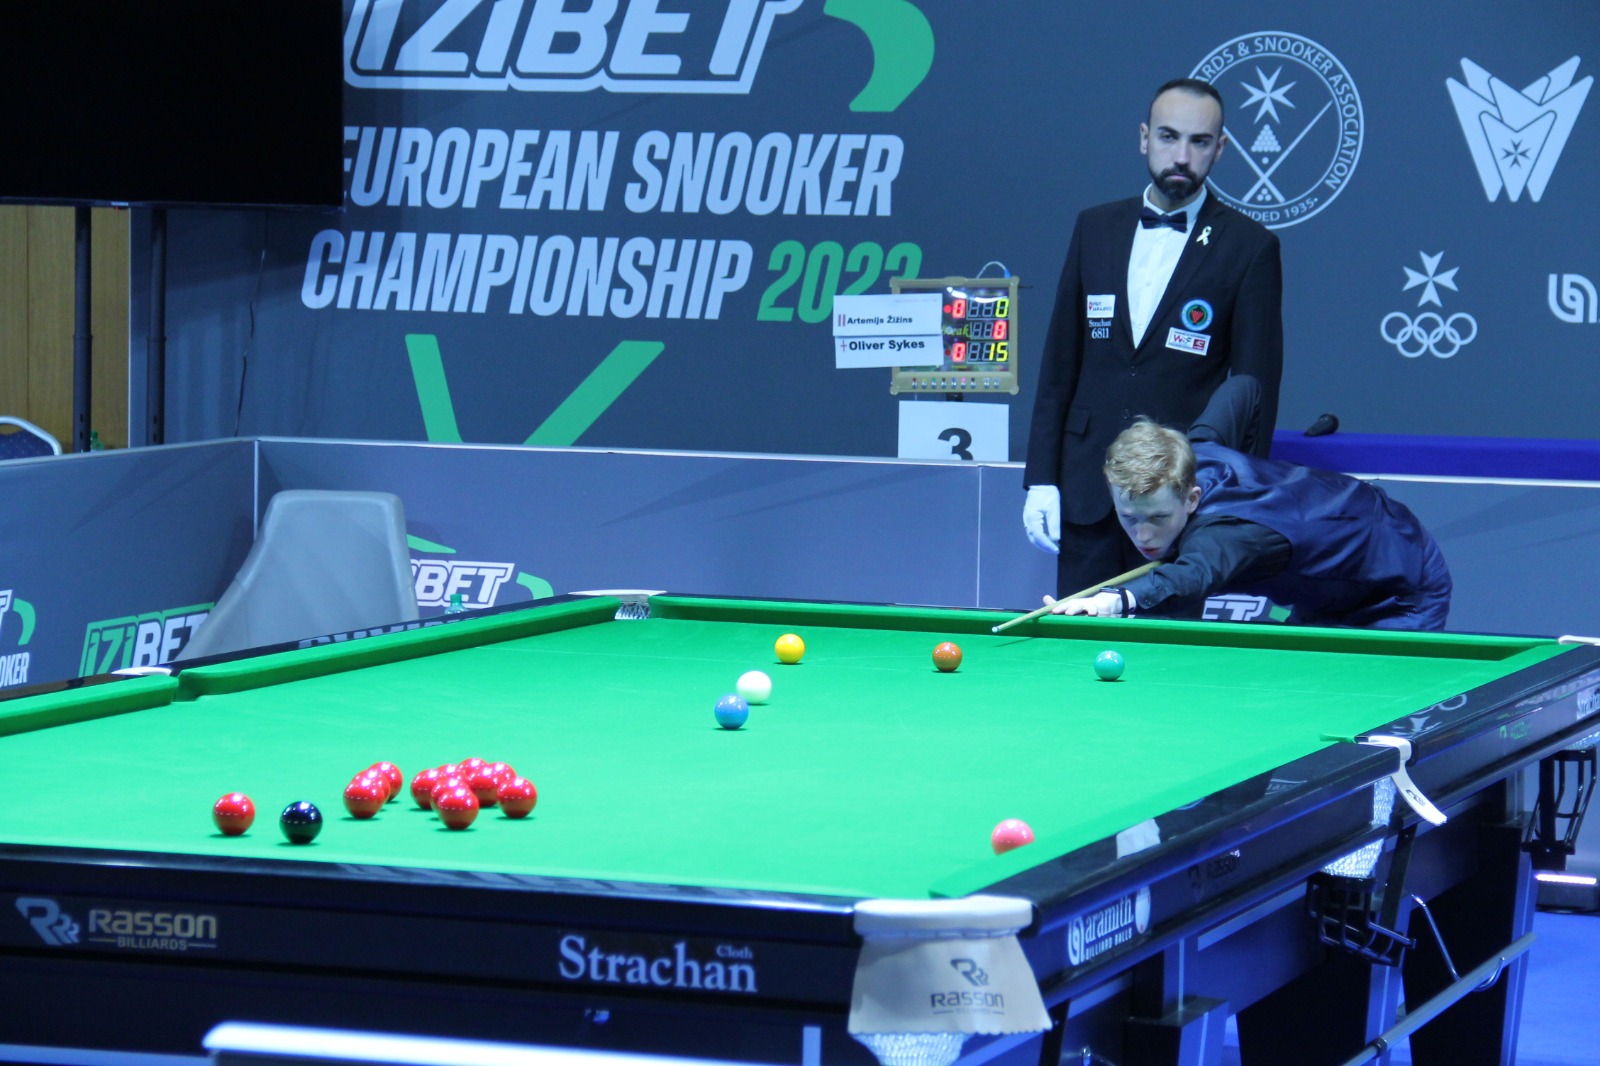 European U-21 snooker championship underway